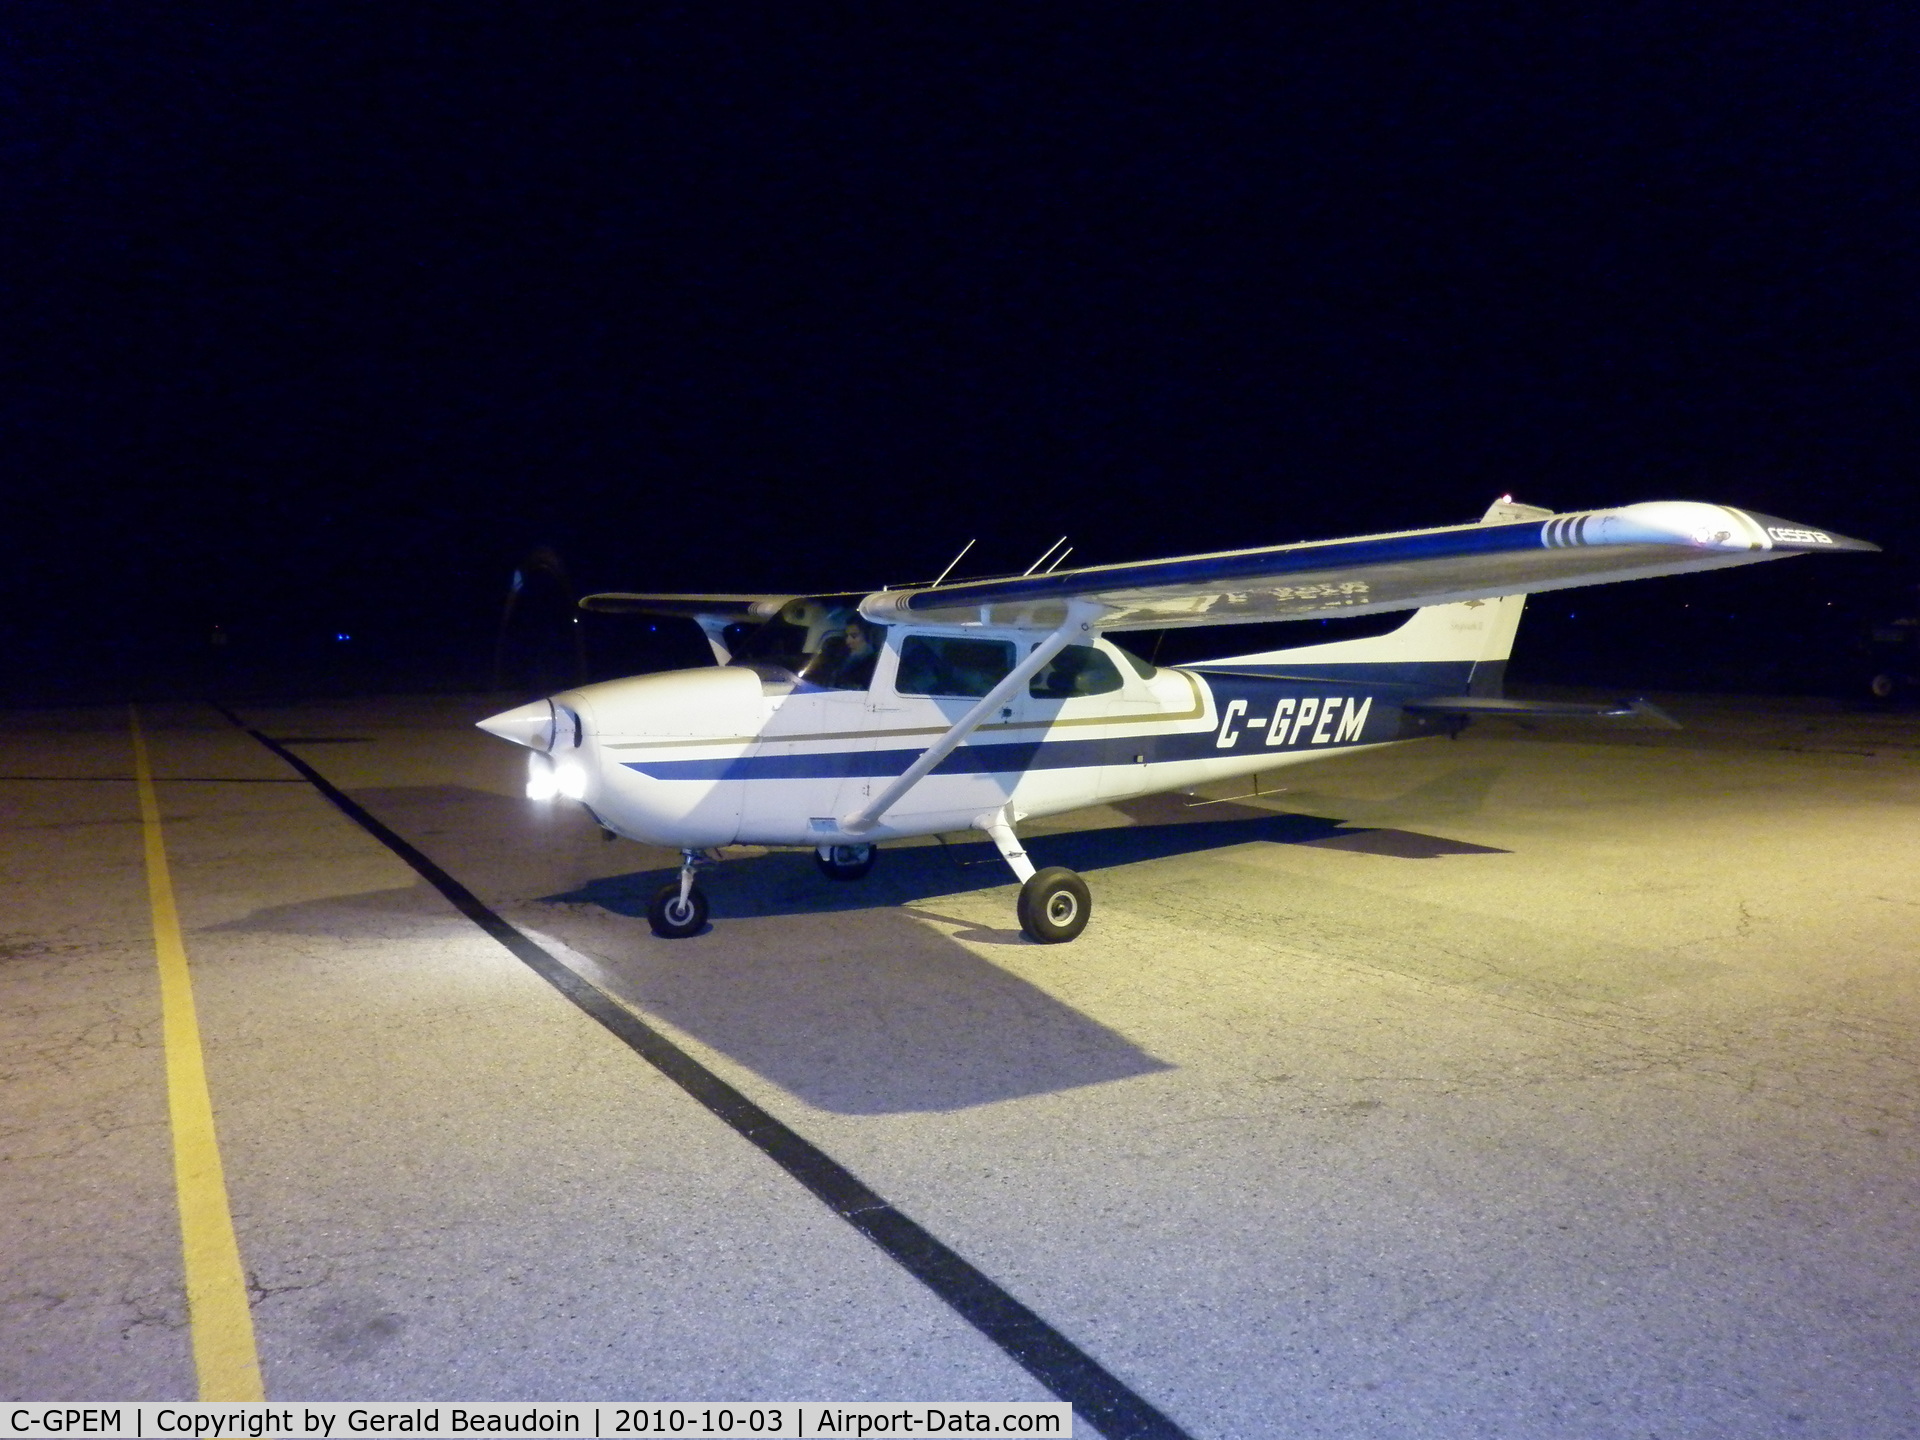 C-GPEM, 1973 Cessna 172M Skyhawk II C/N 17262521, GPEM at night